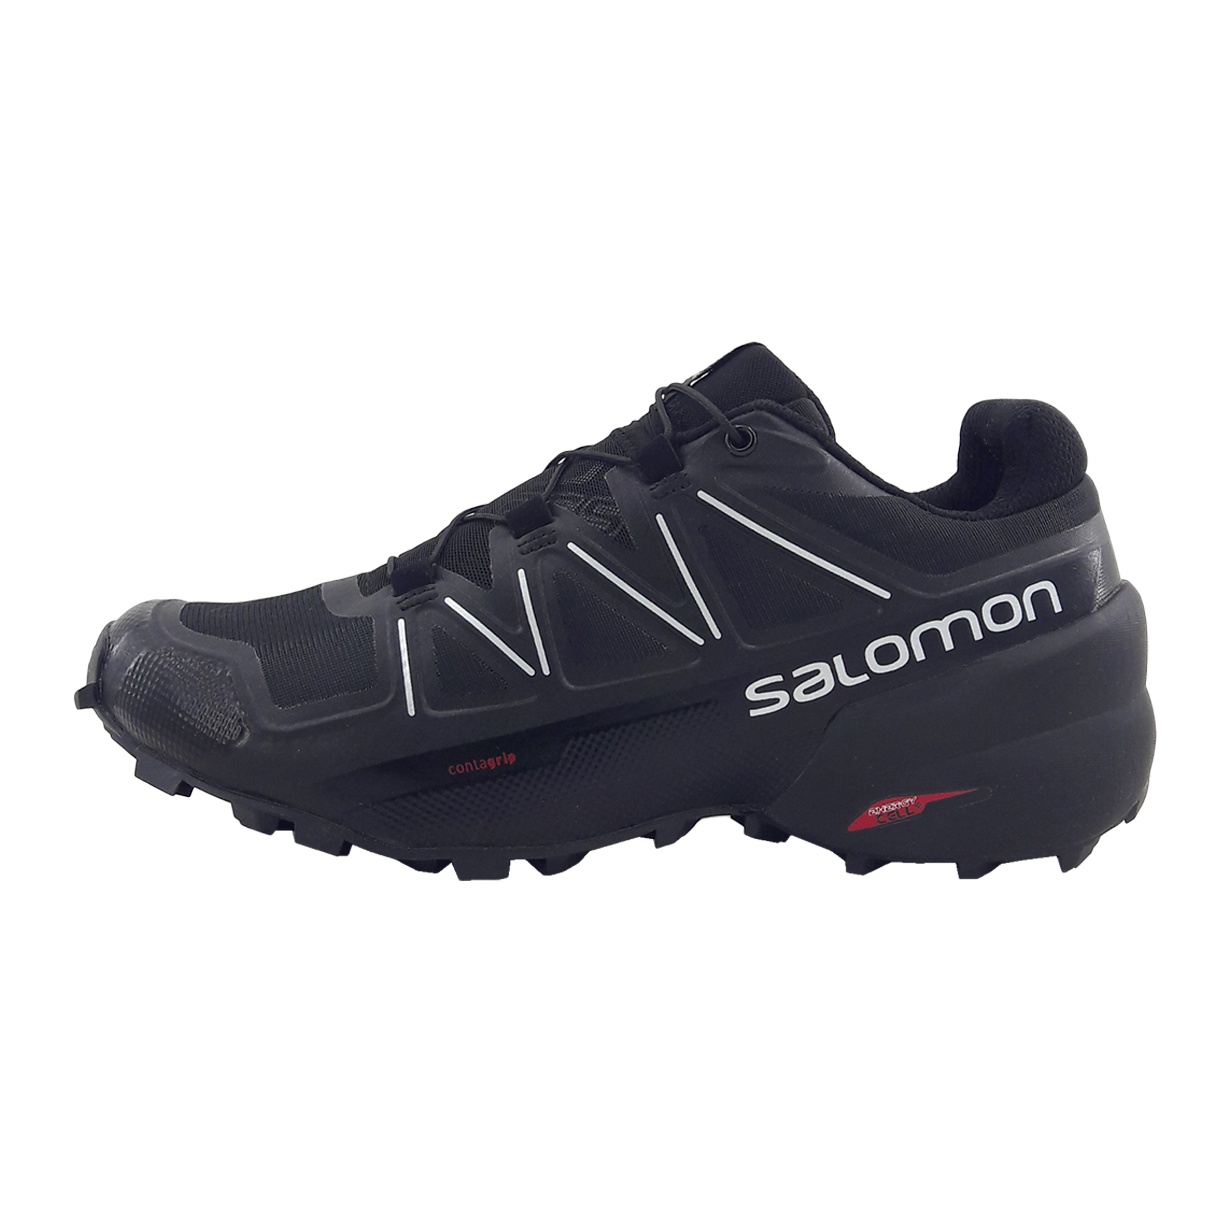 کفش مخصوص پیاده روی مردانه سالومون مدل Speedcross 5